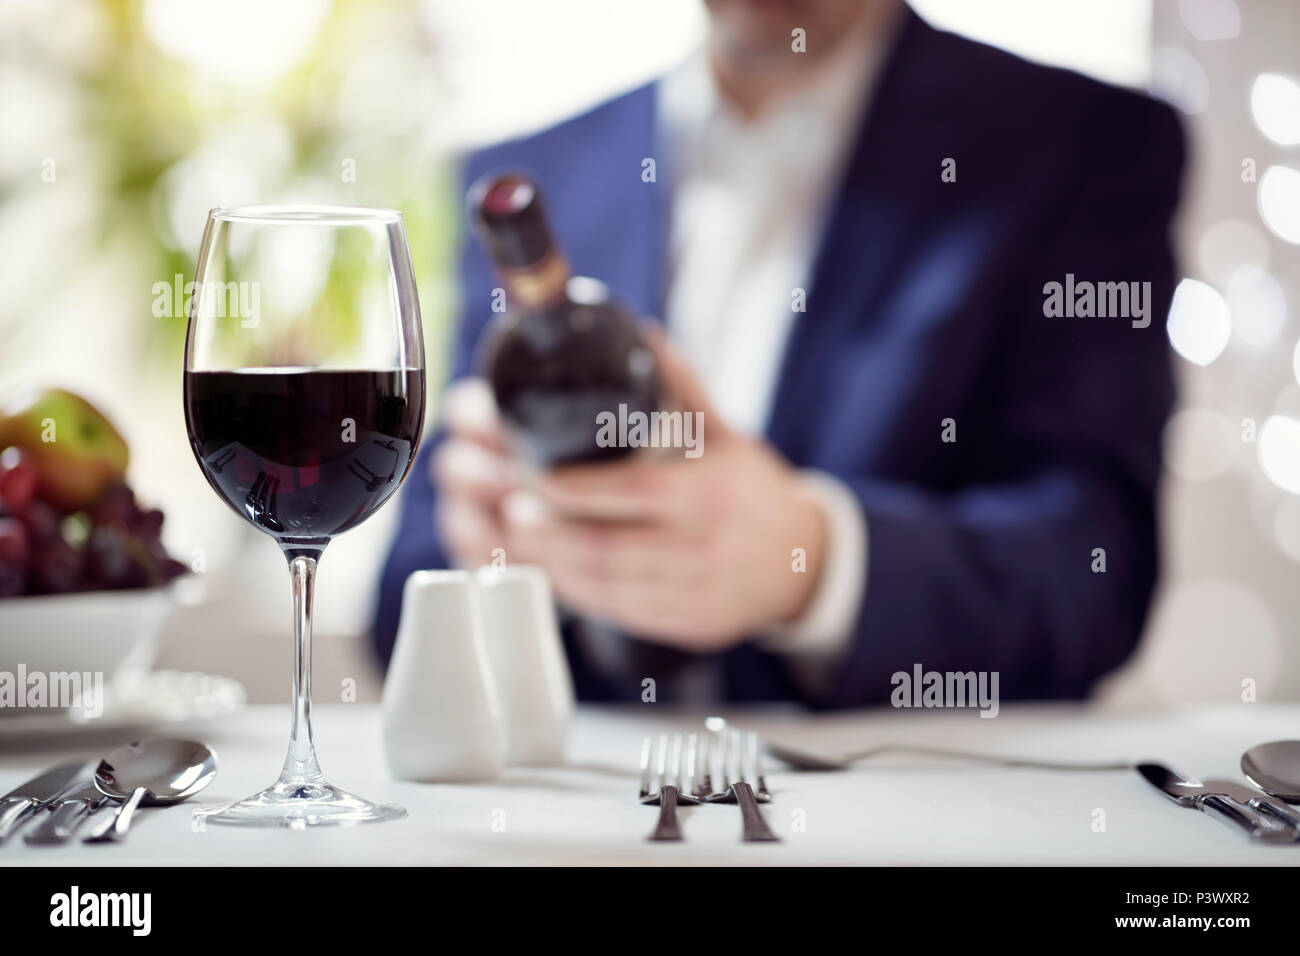 Woman red wine bottle label en concept de restaurant pour les déjeuners d'affaires ou repas de travail Banque D'Images